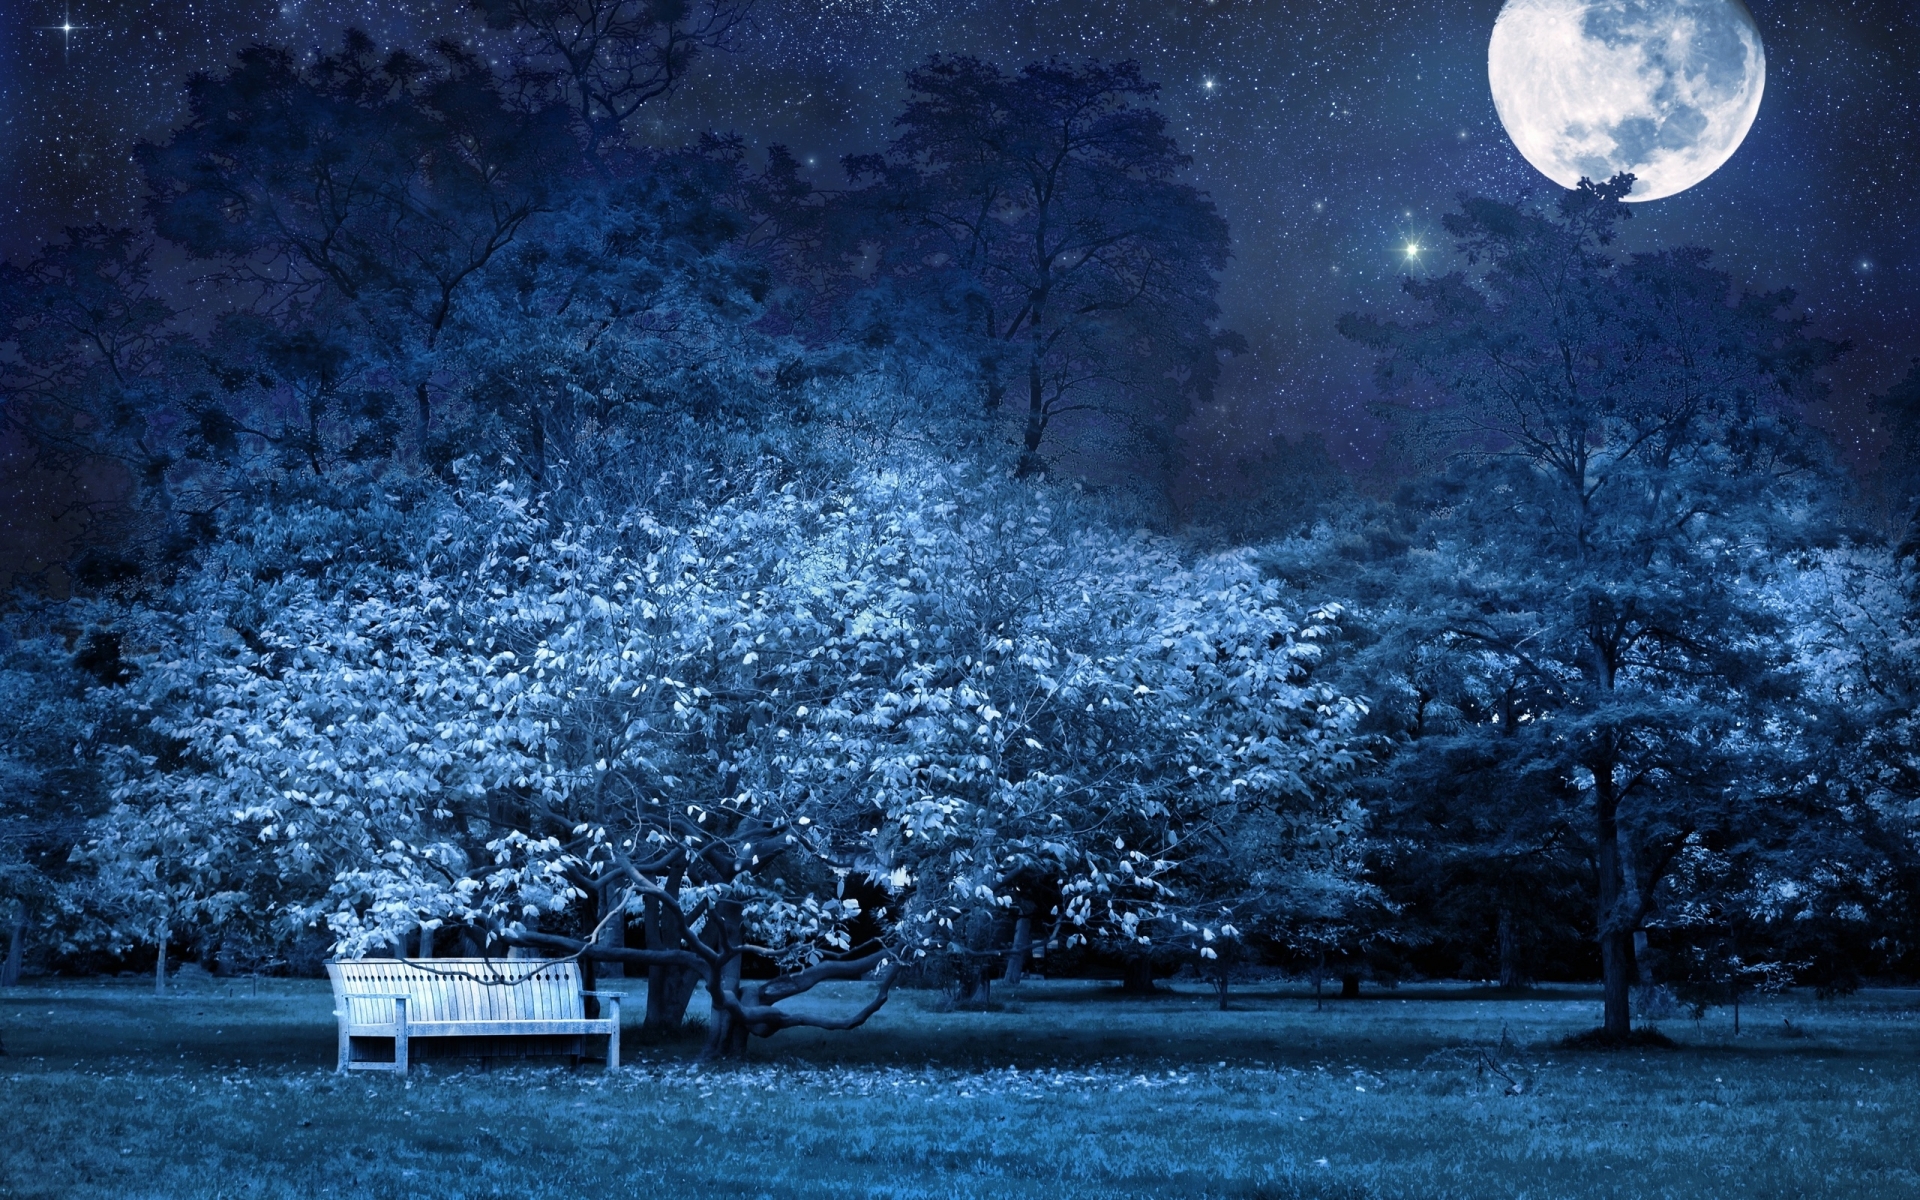 night, Bench, Park, Trees, Stars, Full, Moon, Sky, Light, Darkness